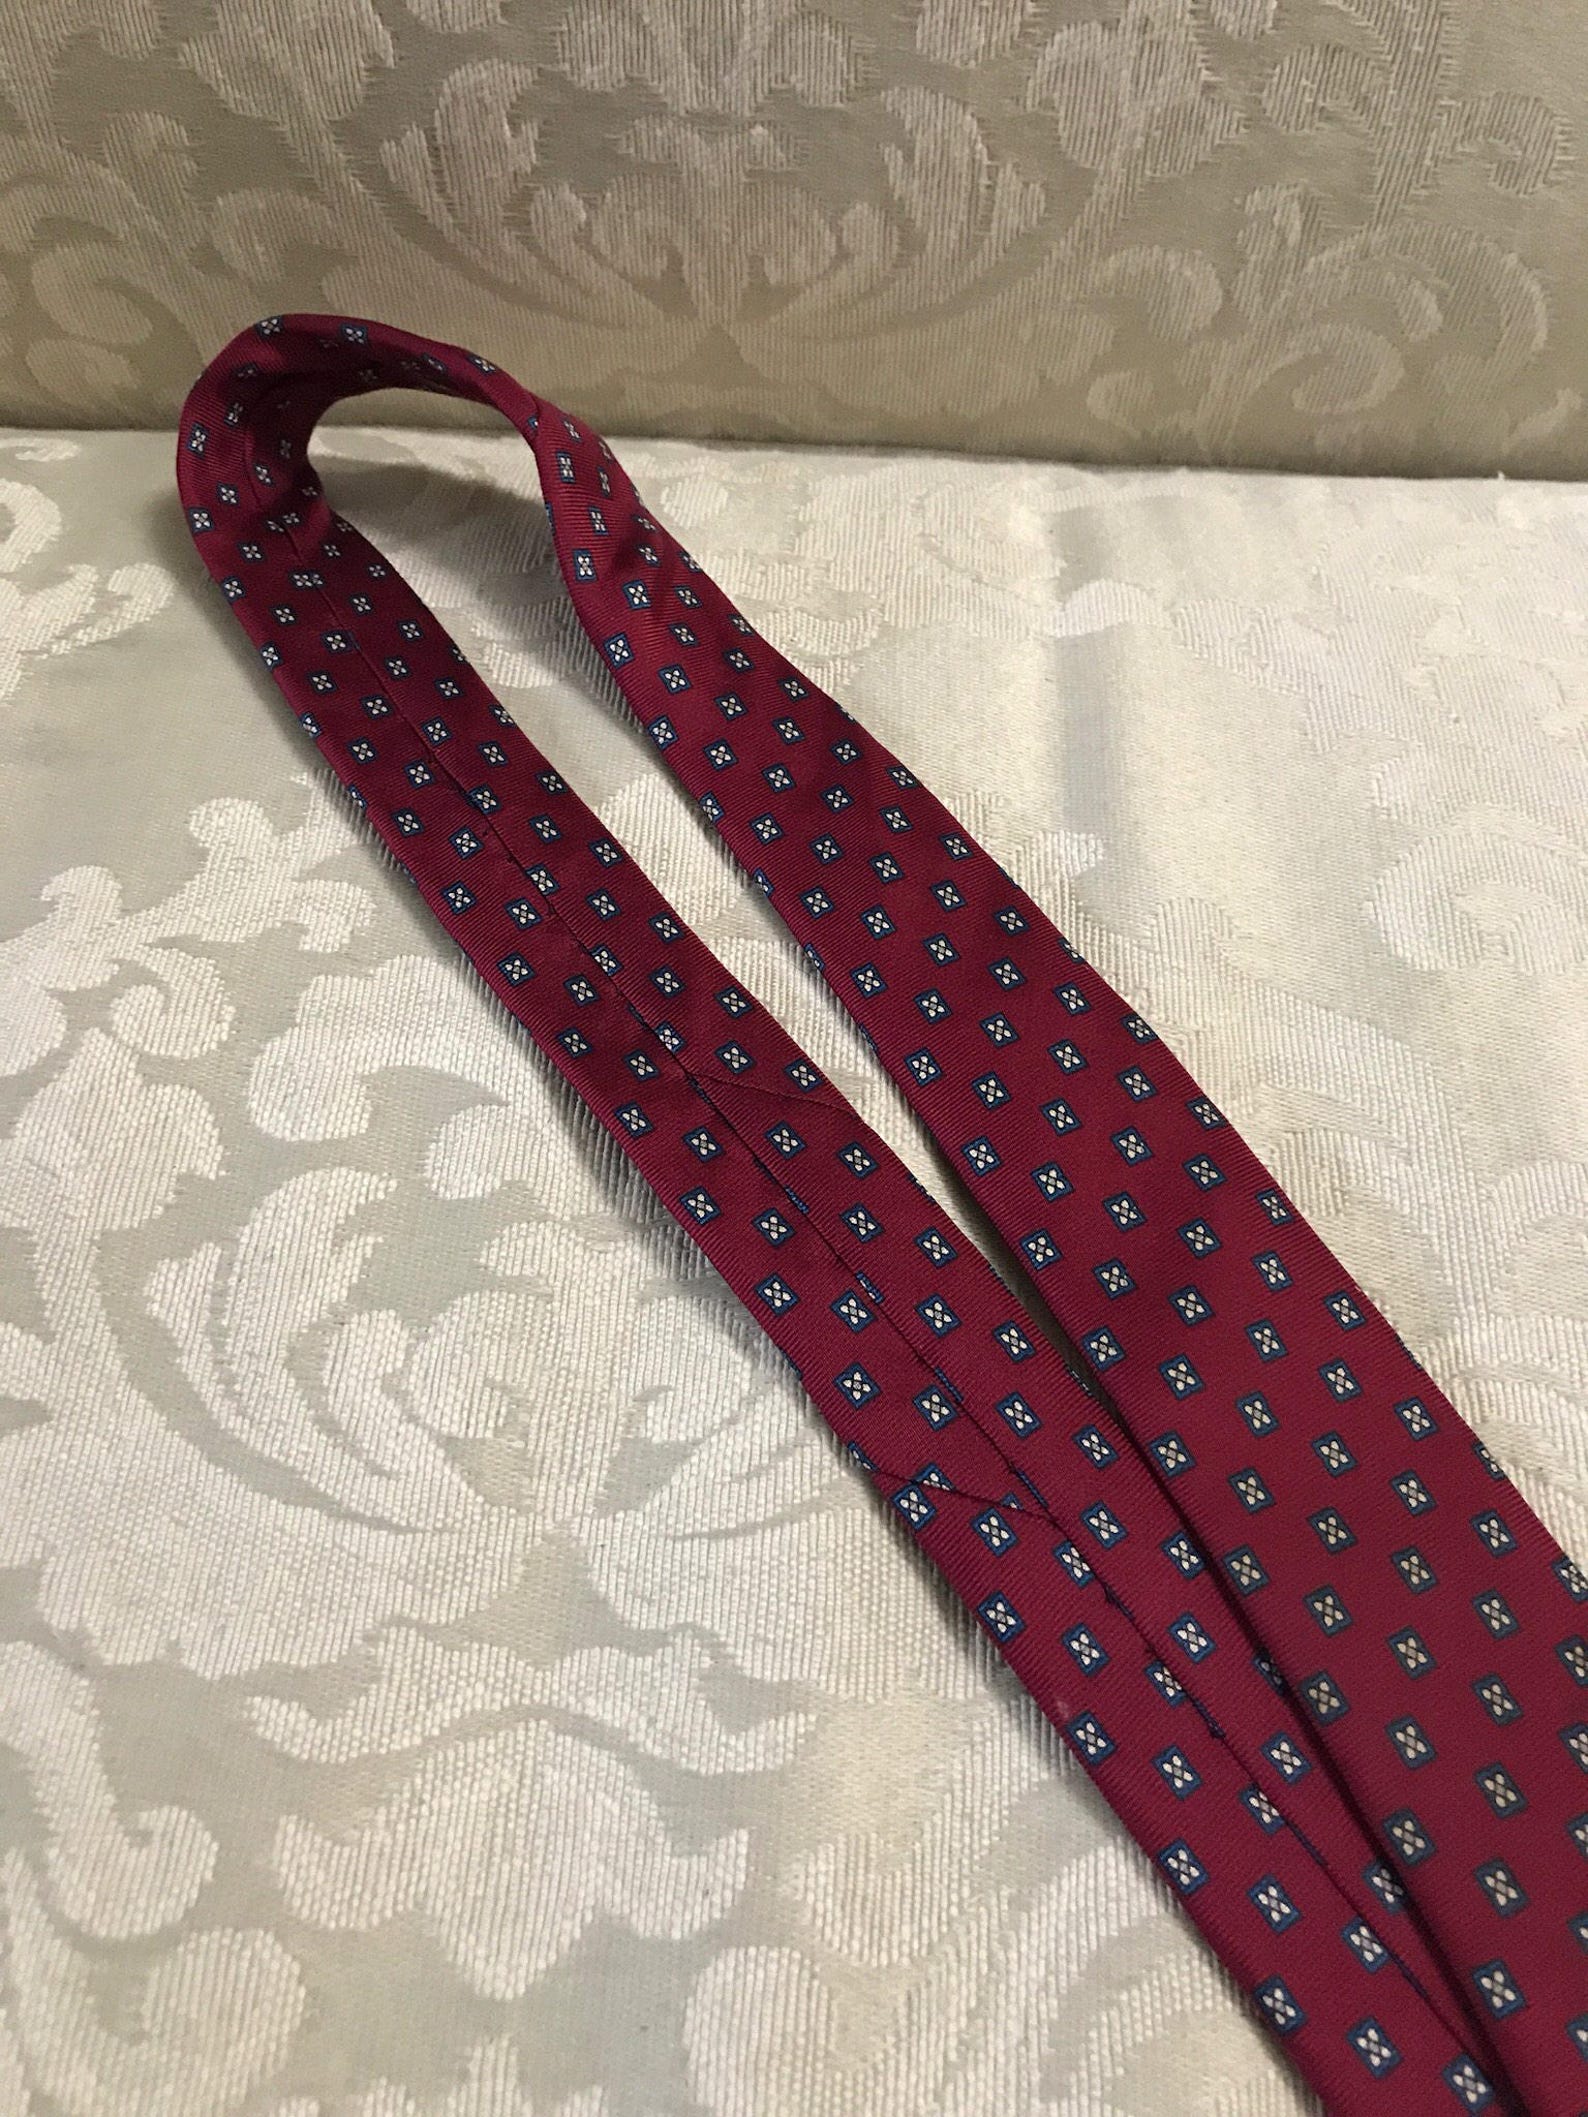 Vintage Givenchy Tie Vintage Neckties Men's Ties | Etsy